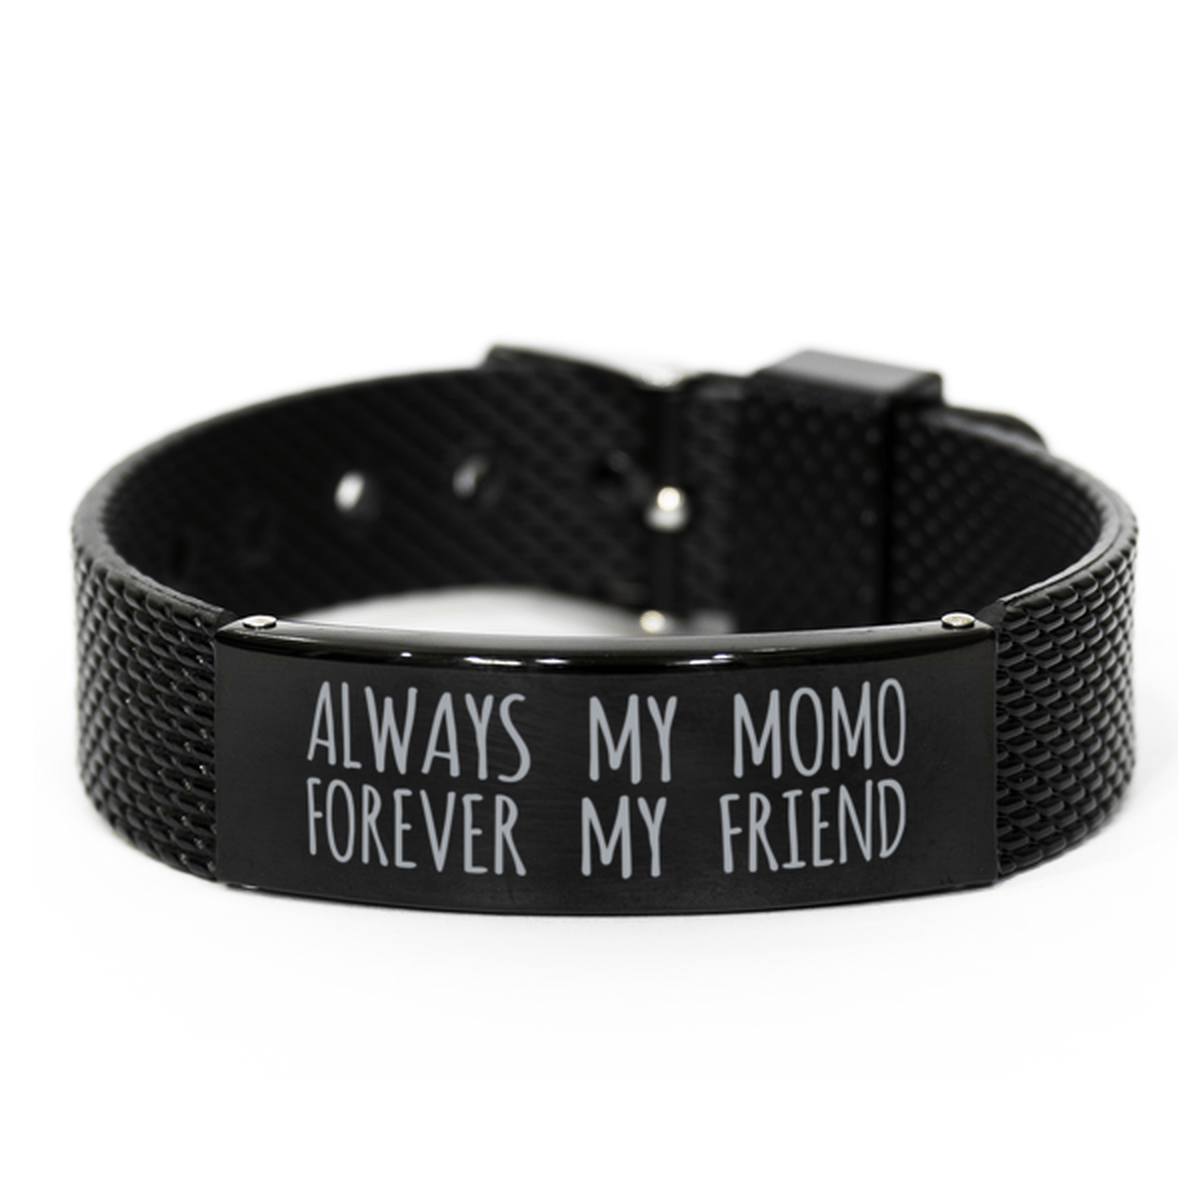 Inspirational Momo Black Shark Mesh Bracelet, Always My Momo Forever My Friend, Best Birthday Gifts for Family Friends